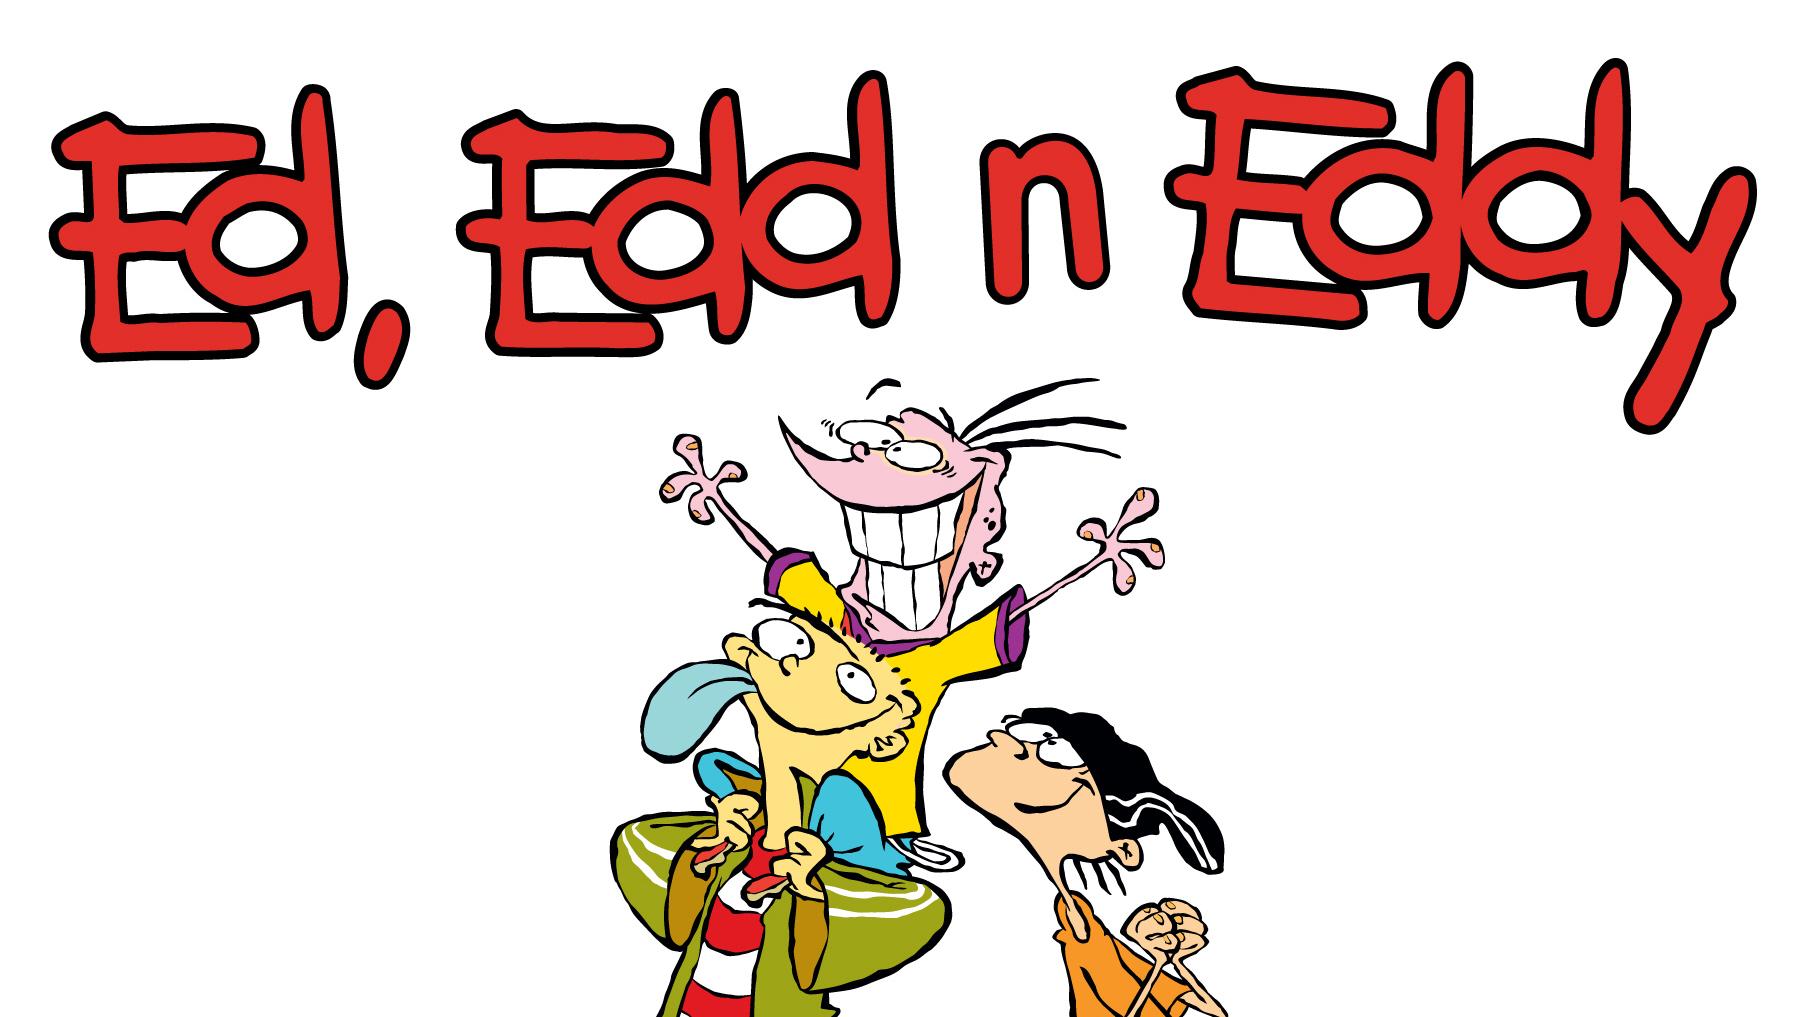 ed edd n eddy episodes online free